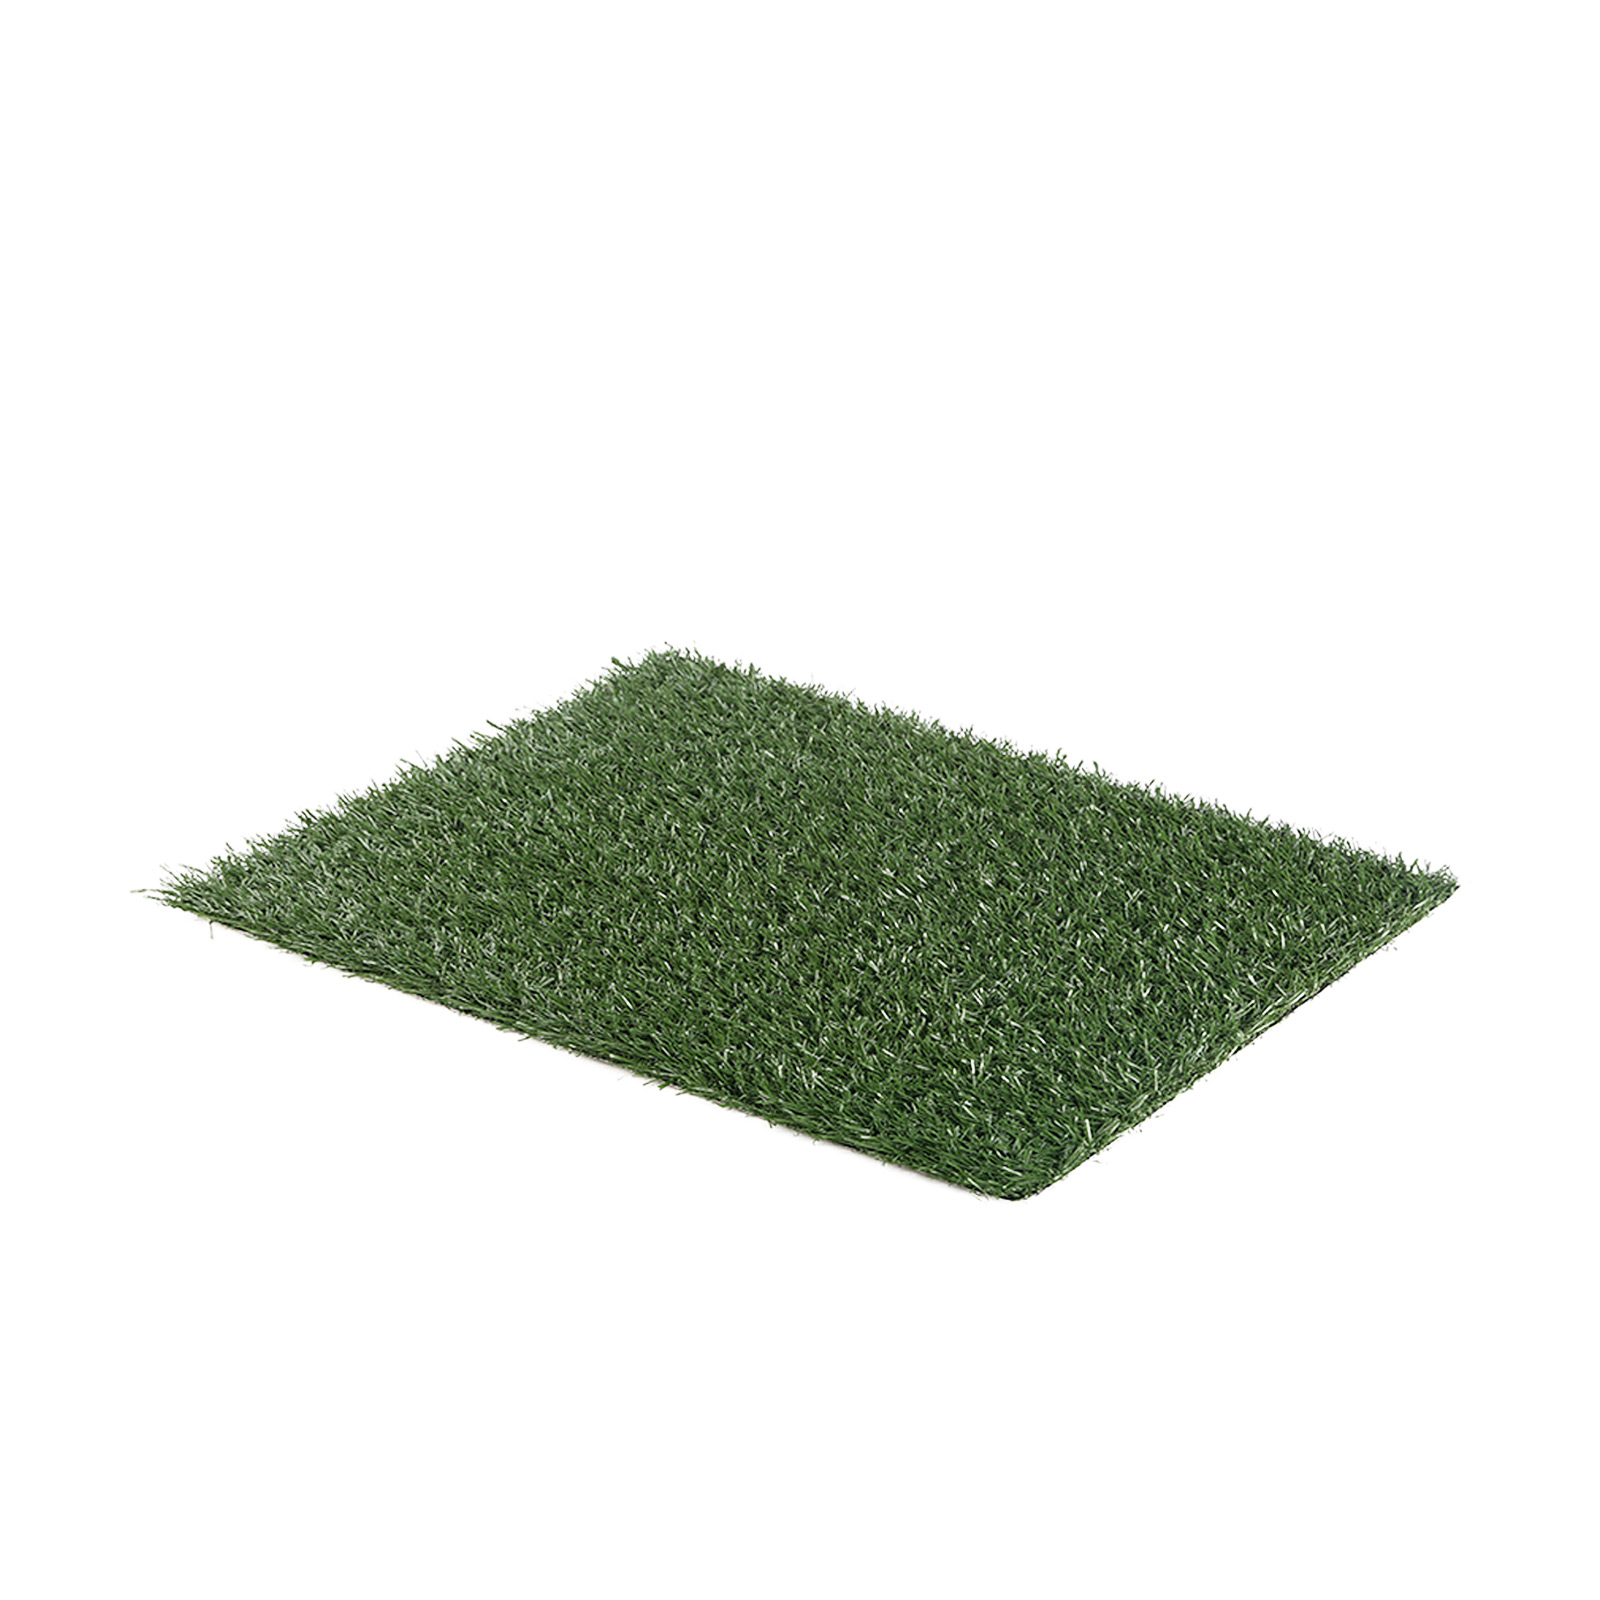 63.5cm x 38cm Grass Mat